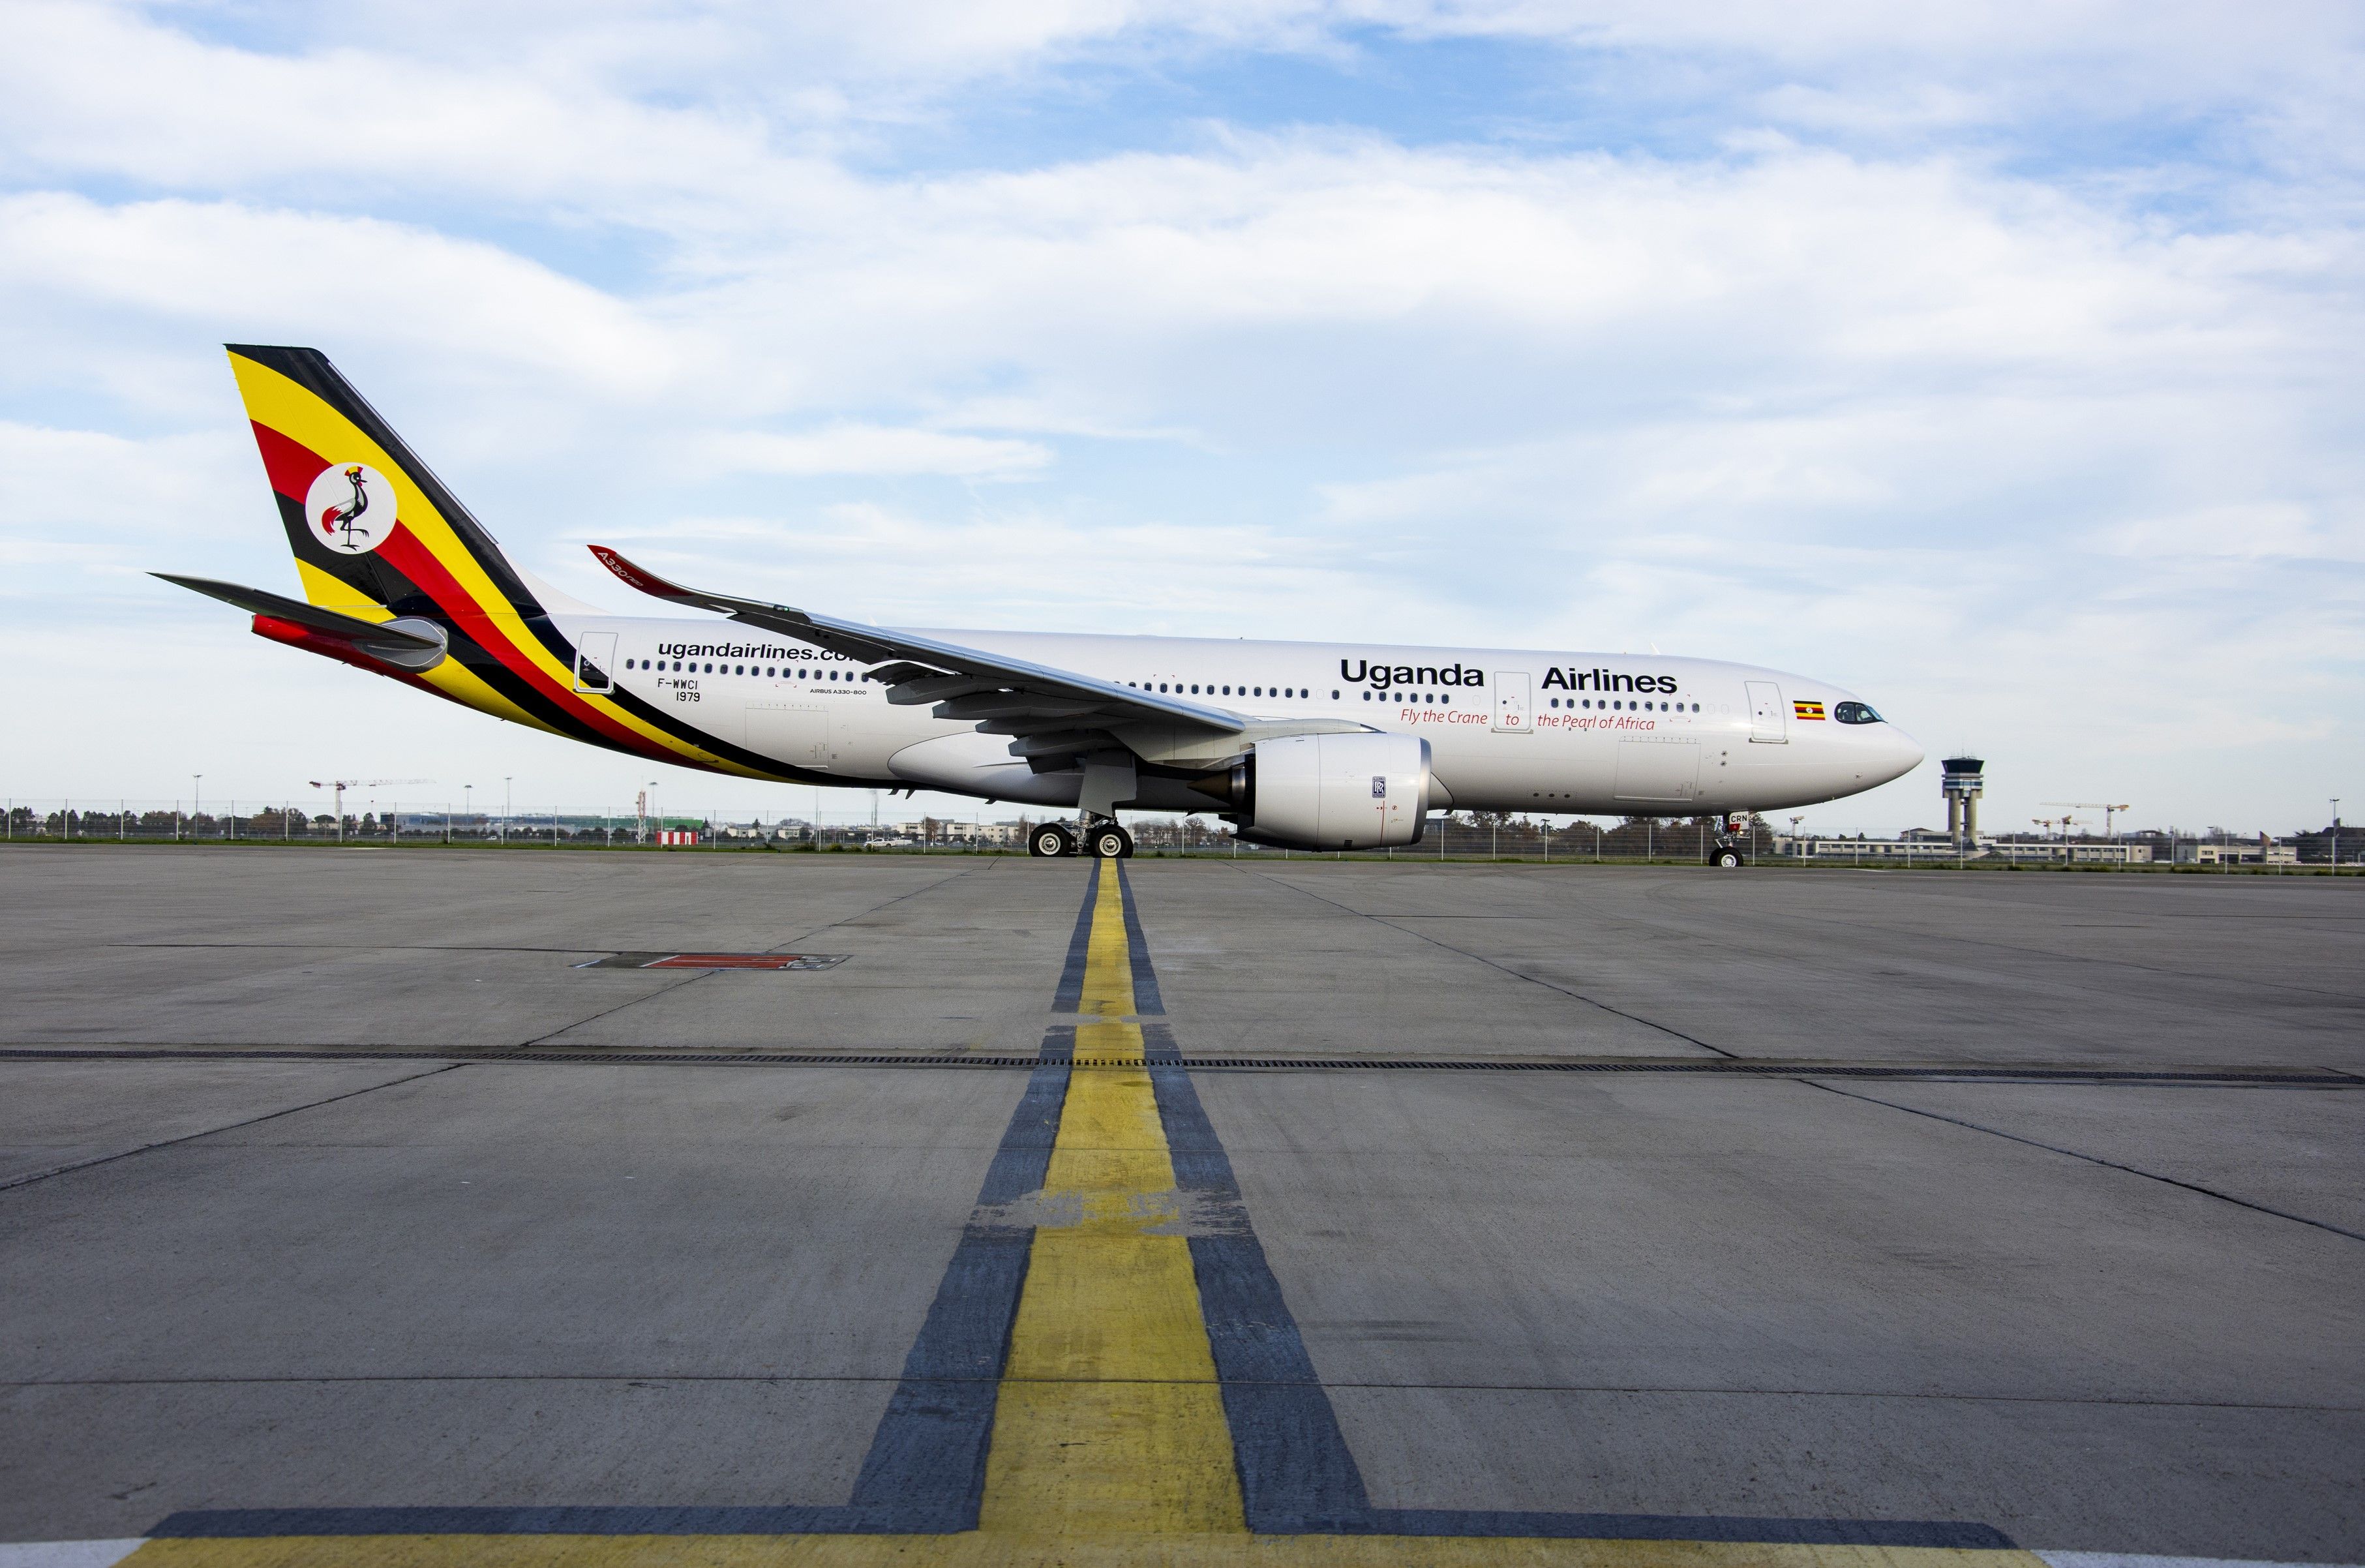 Uganda Airlines Airbus A330neo